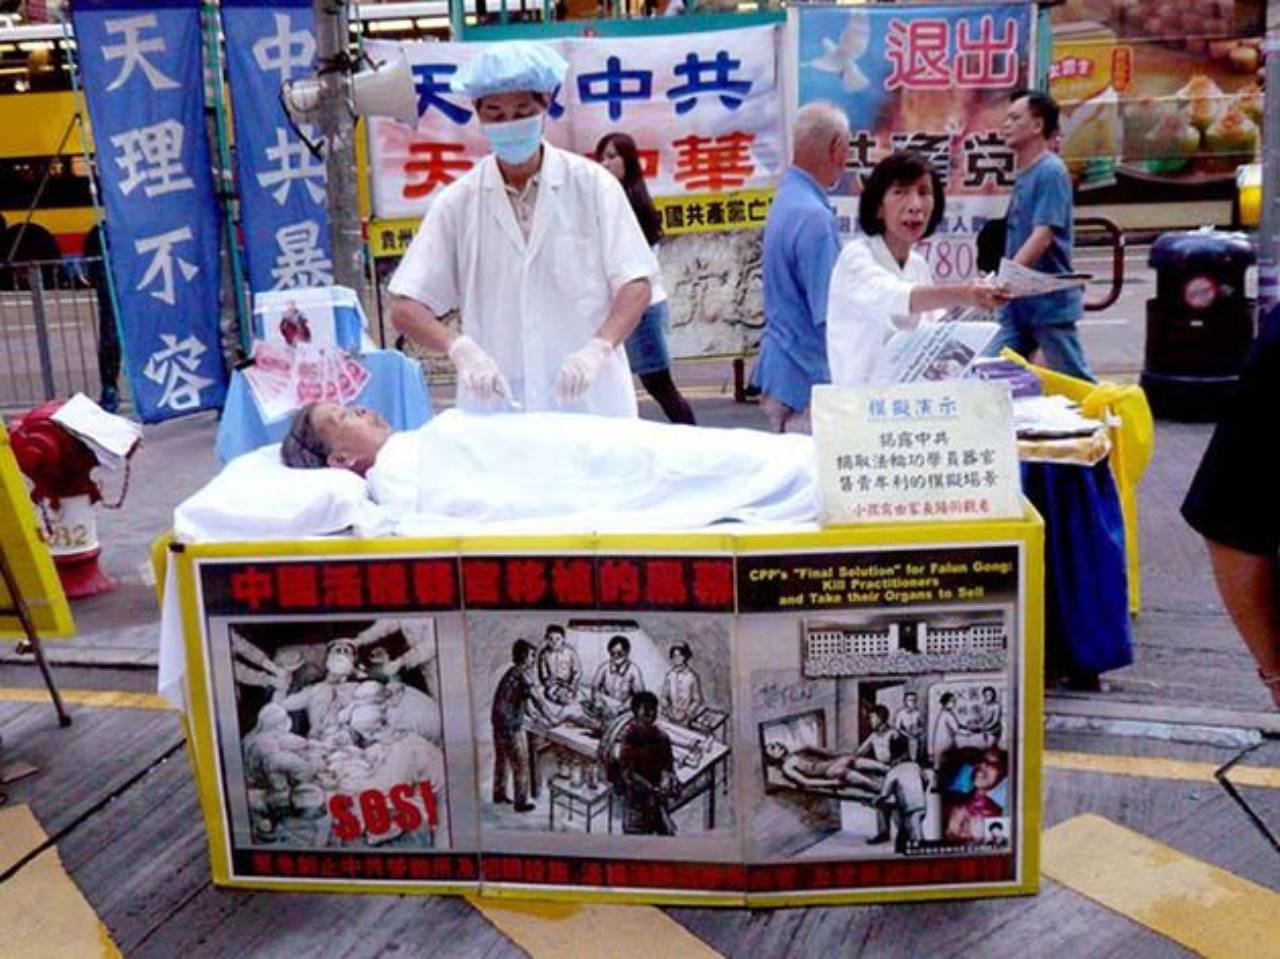 República Popular de China: recolección de órganos disponibles para trasplantar